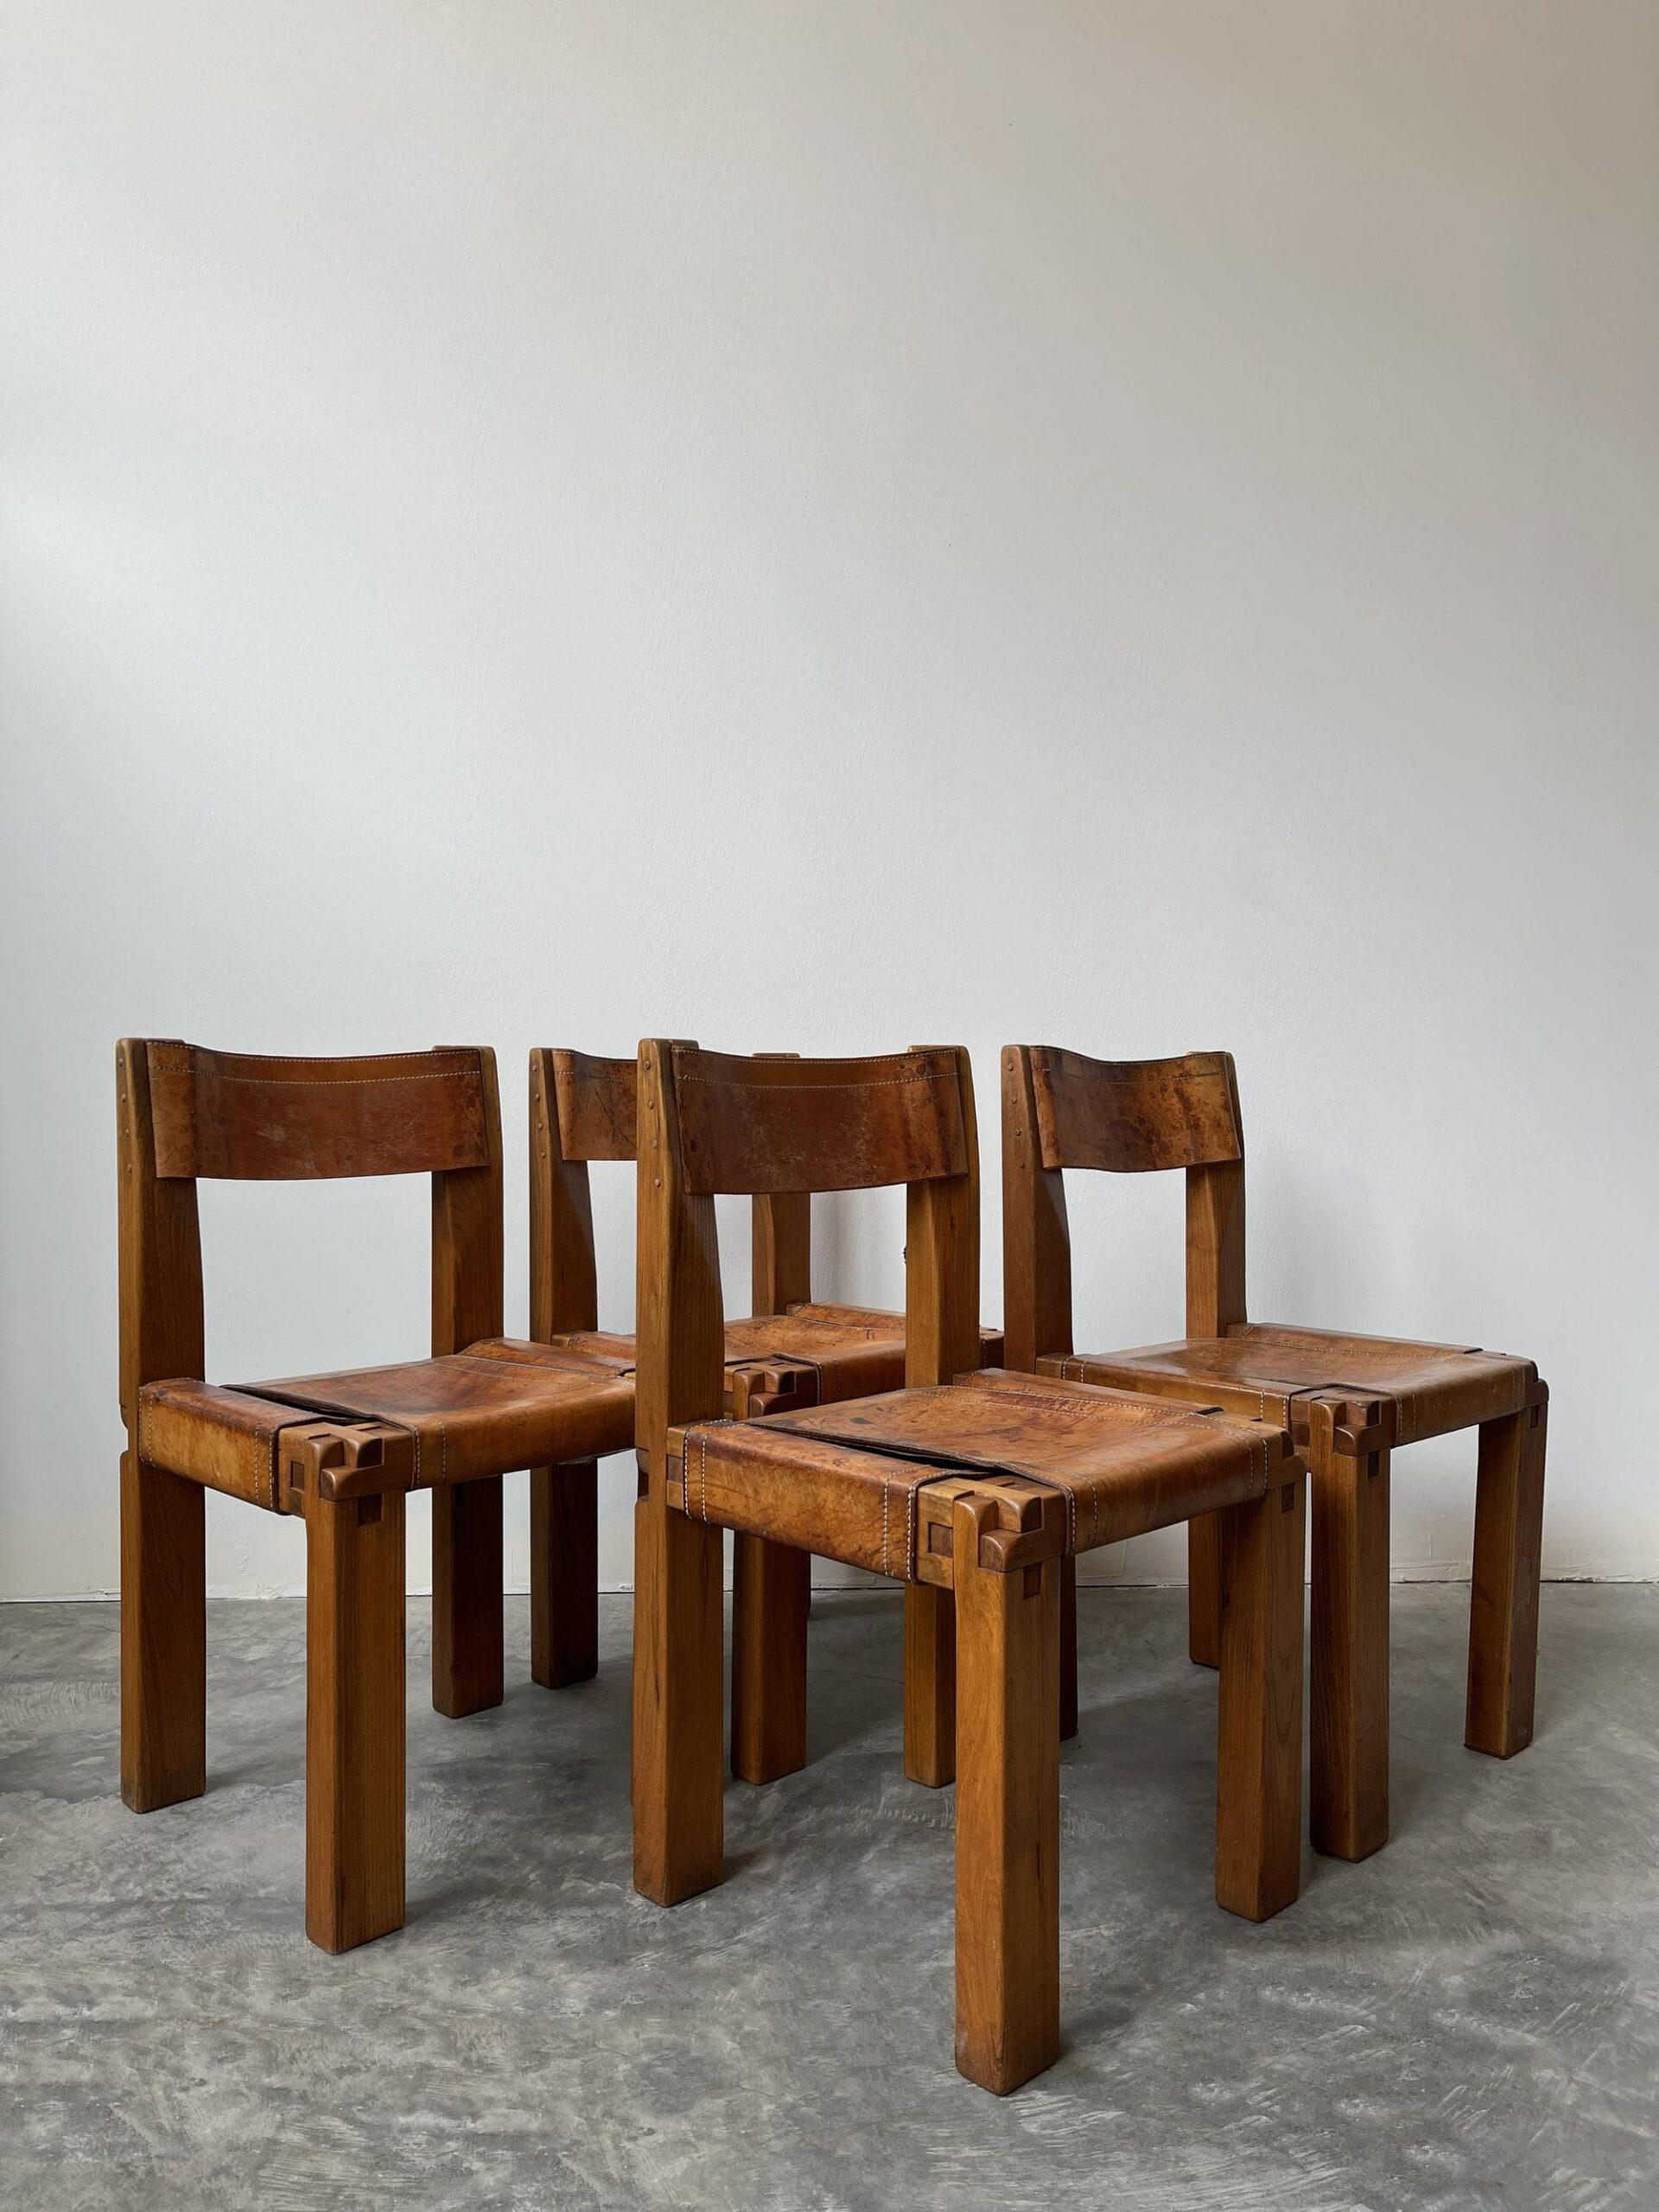 Cet ensemble de 4 chaises S11 à la patine lourde absolument époustouflante témoigne du savoir-faire artisanal de Chapo et des détails de conception raffinés et pointus, comme en témoignent la menuiserie en bois et les coutures en cuir. Un ensemble